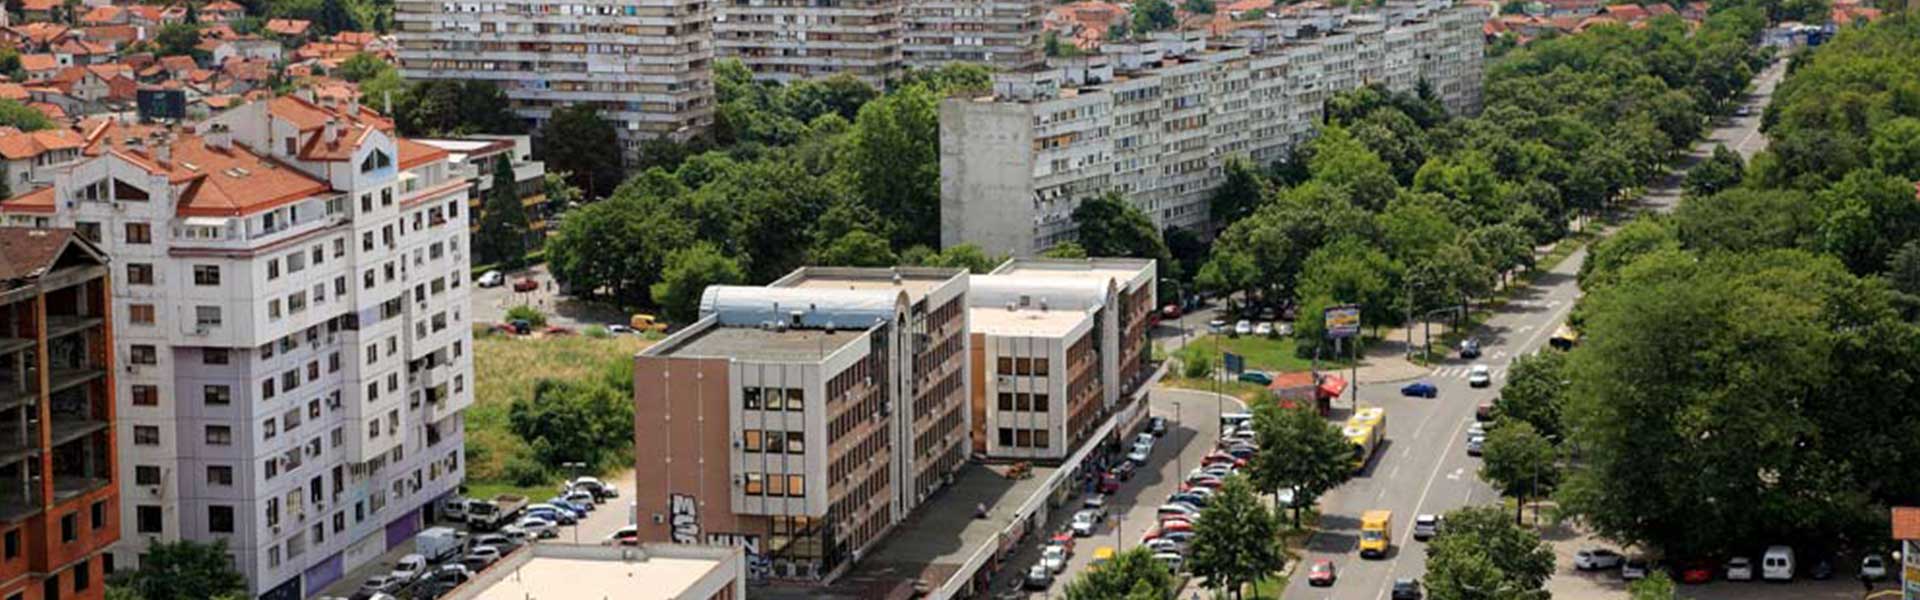 Škola šaha Beograd | Voždovac